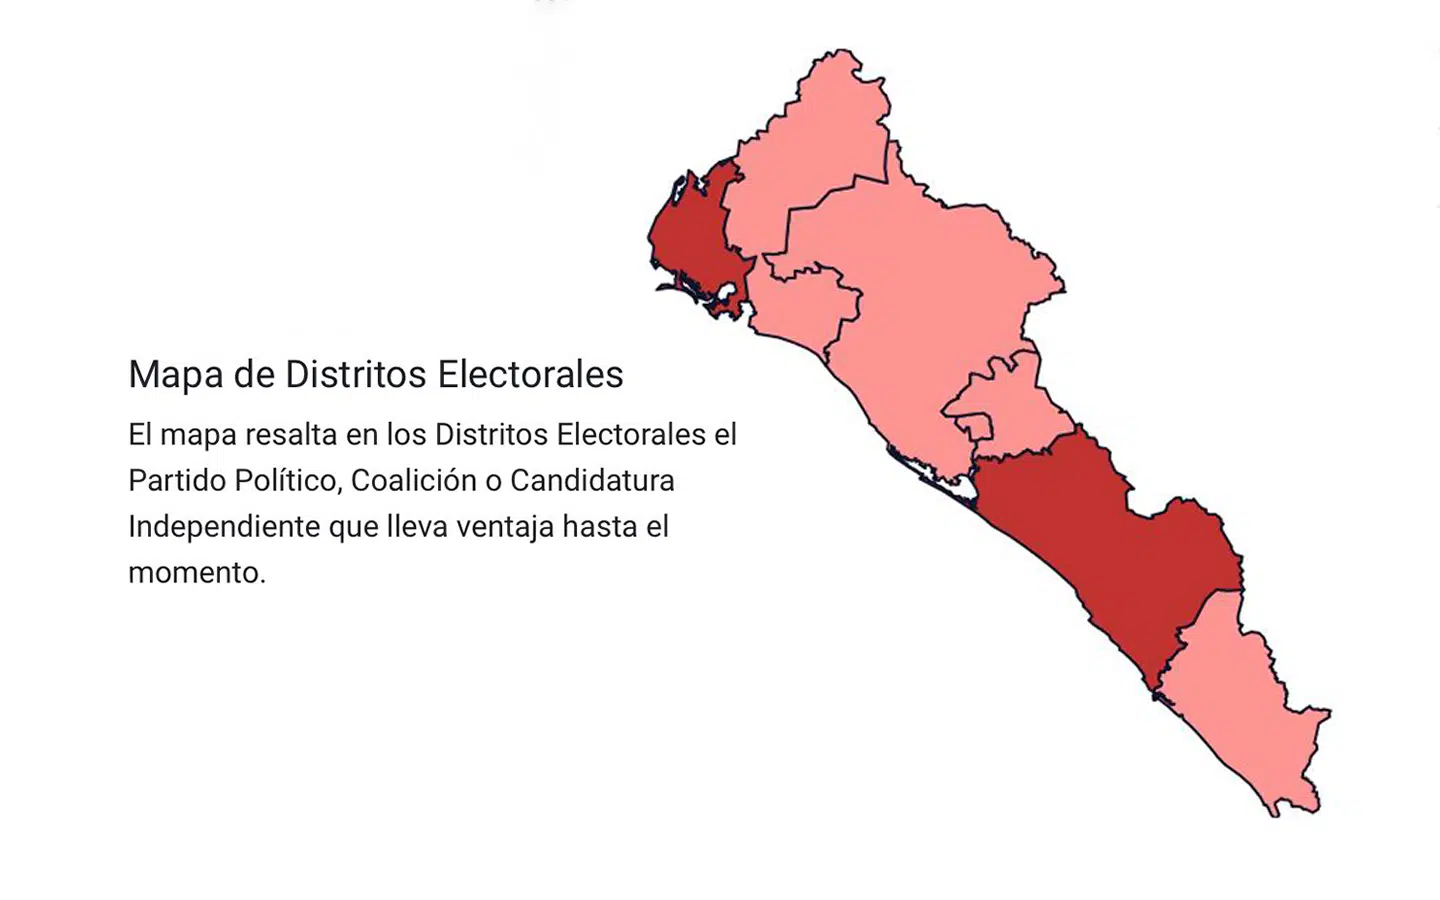 Mapa de distritos electorales